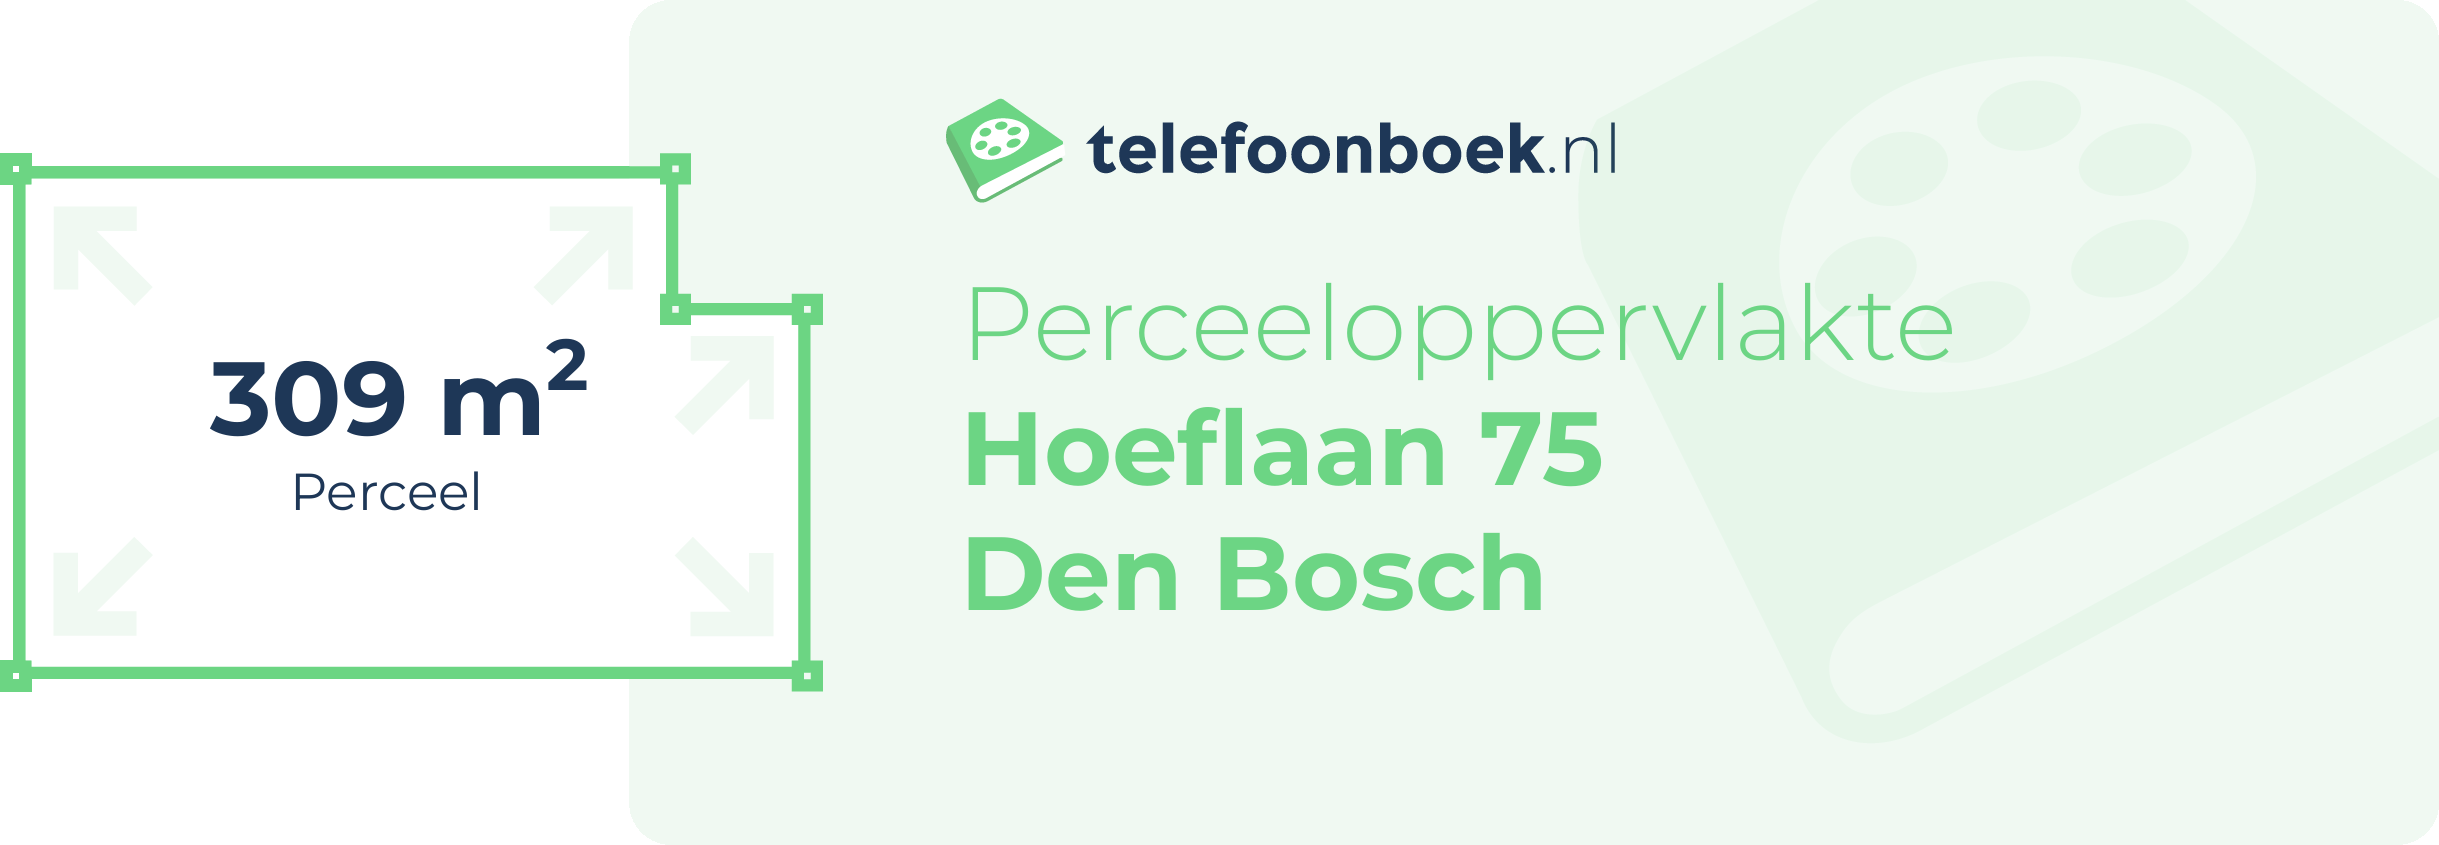 Perceeloppervlakte Hoeflaan 75 Den Bosch